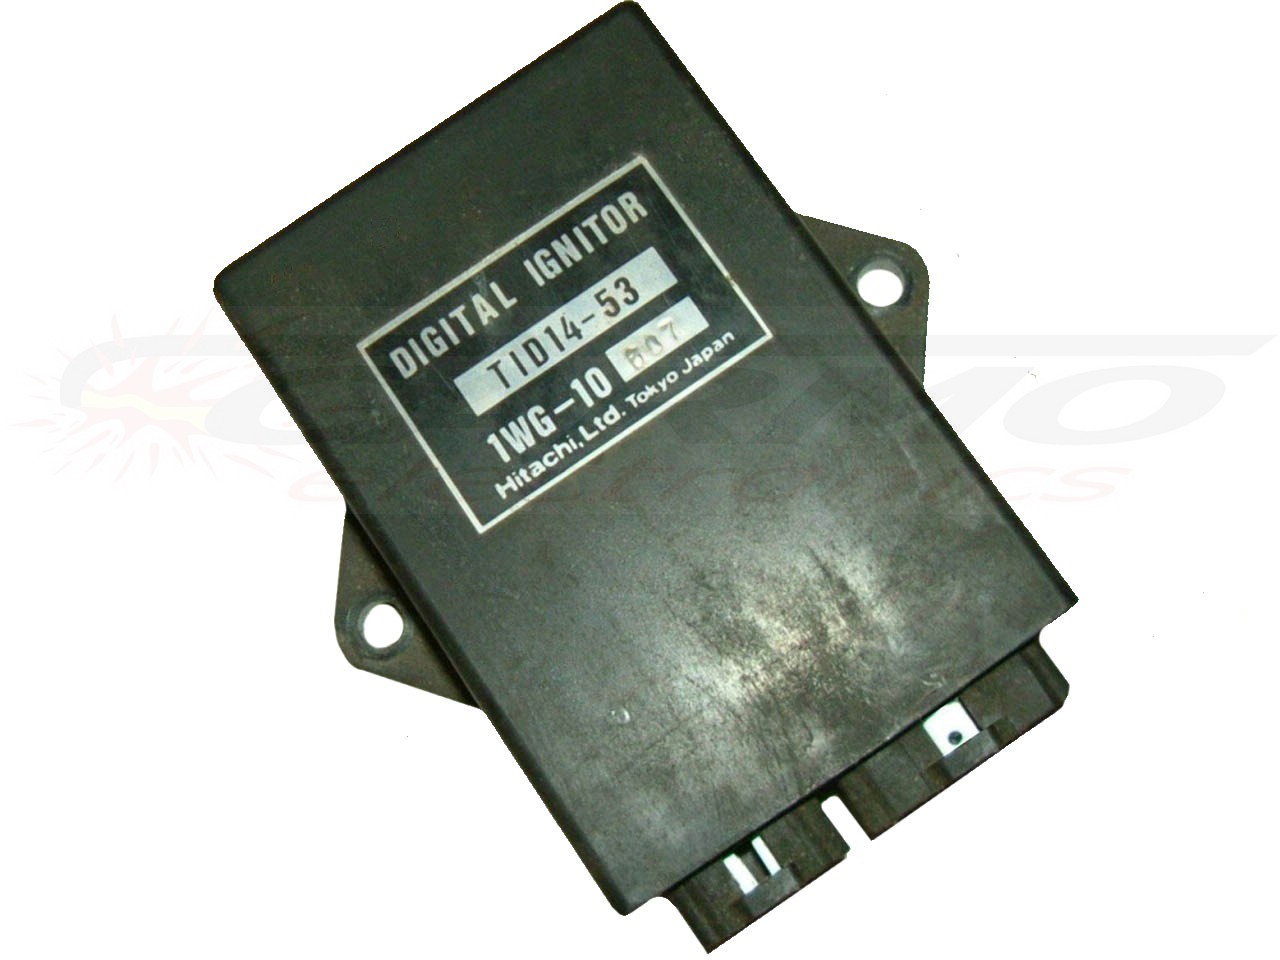 FZR400 CDI Zundbox (TID14-53, TID14-53A, TID14-63, TID140-63A)